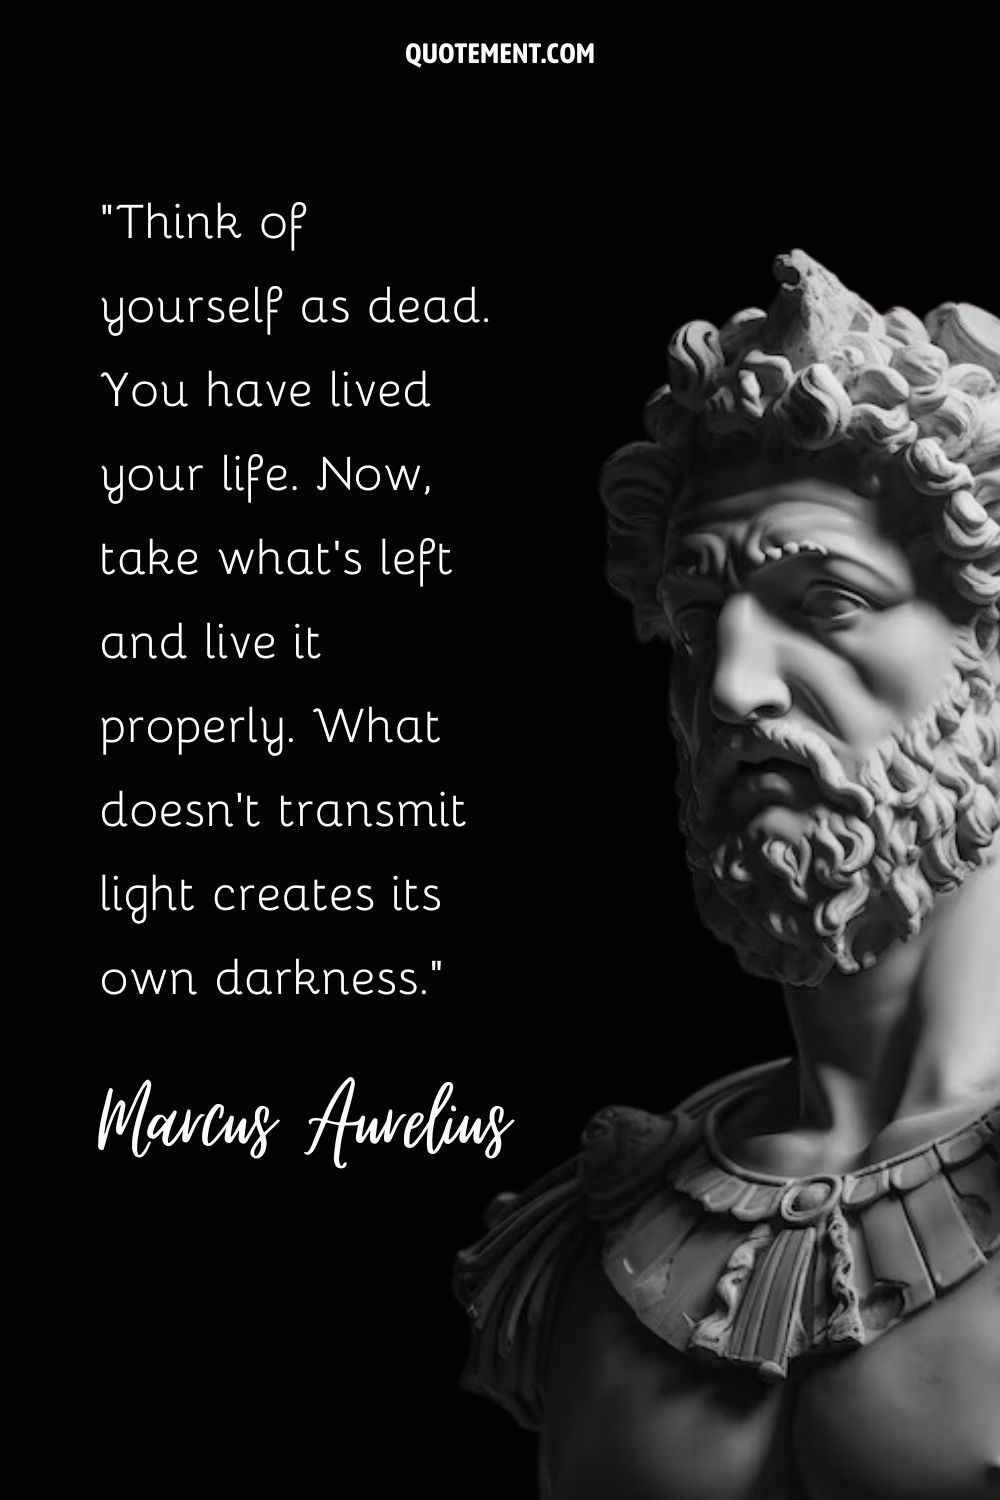 El emperador Marco Aurelio inmortalizado en mármol.